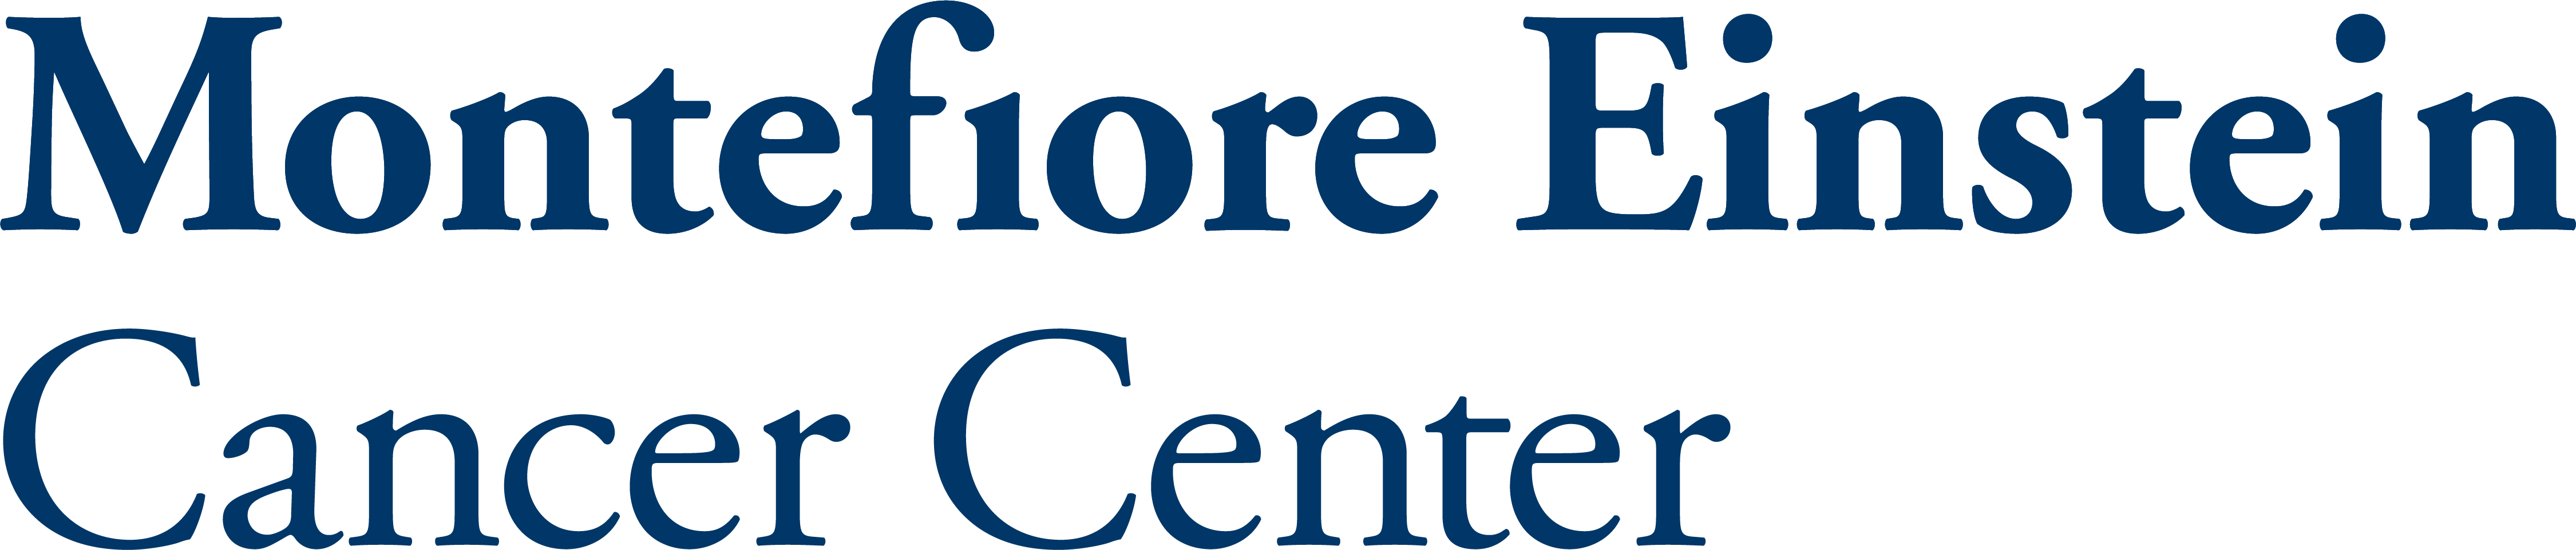 Montefiore Einstein Cancer Center Receives 10 Million Grant to Study